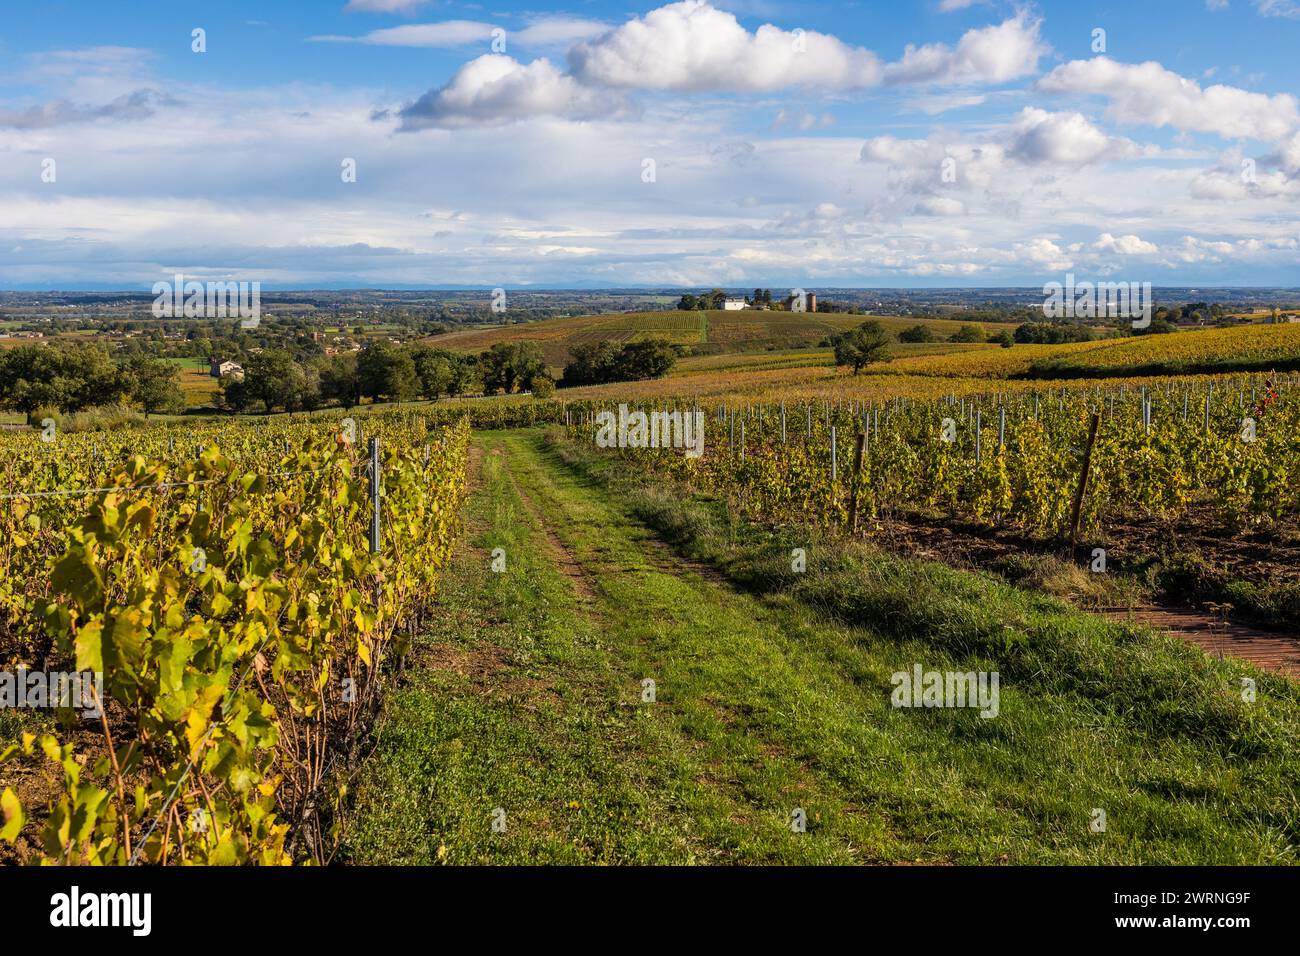 Hameau de Monternot, dans la commune de Charentay, au cœur des vignes du Beaujolais, près du Mont Brouilly Foto Stock